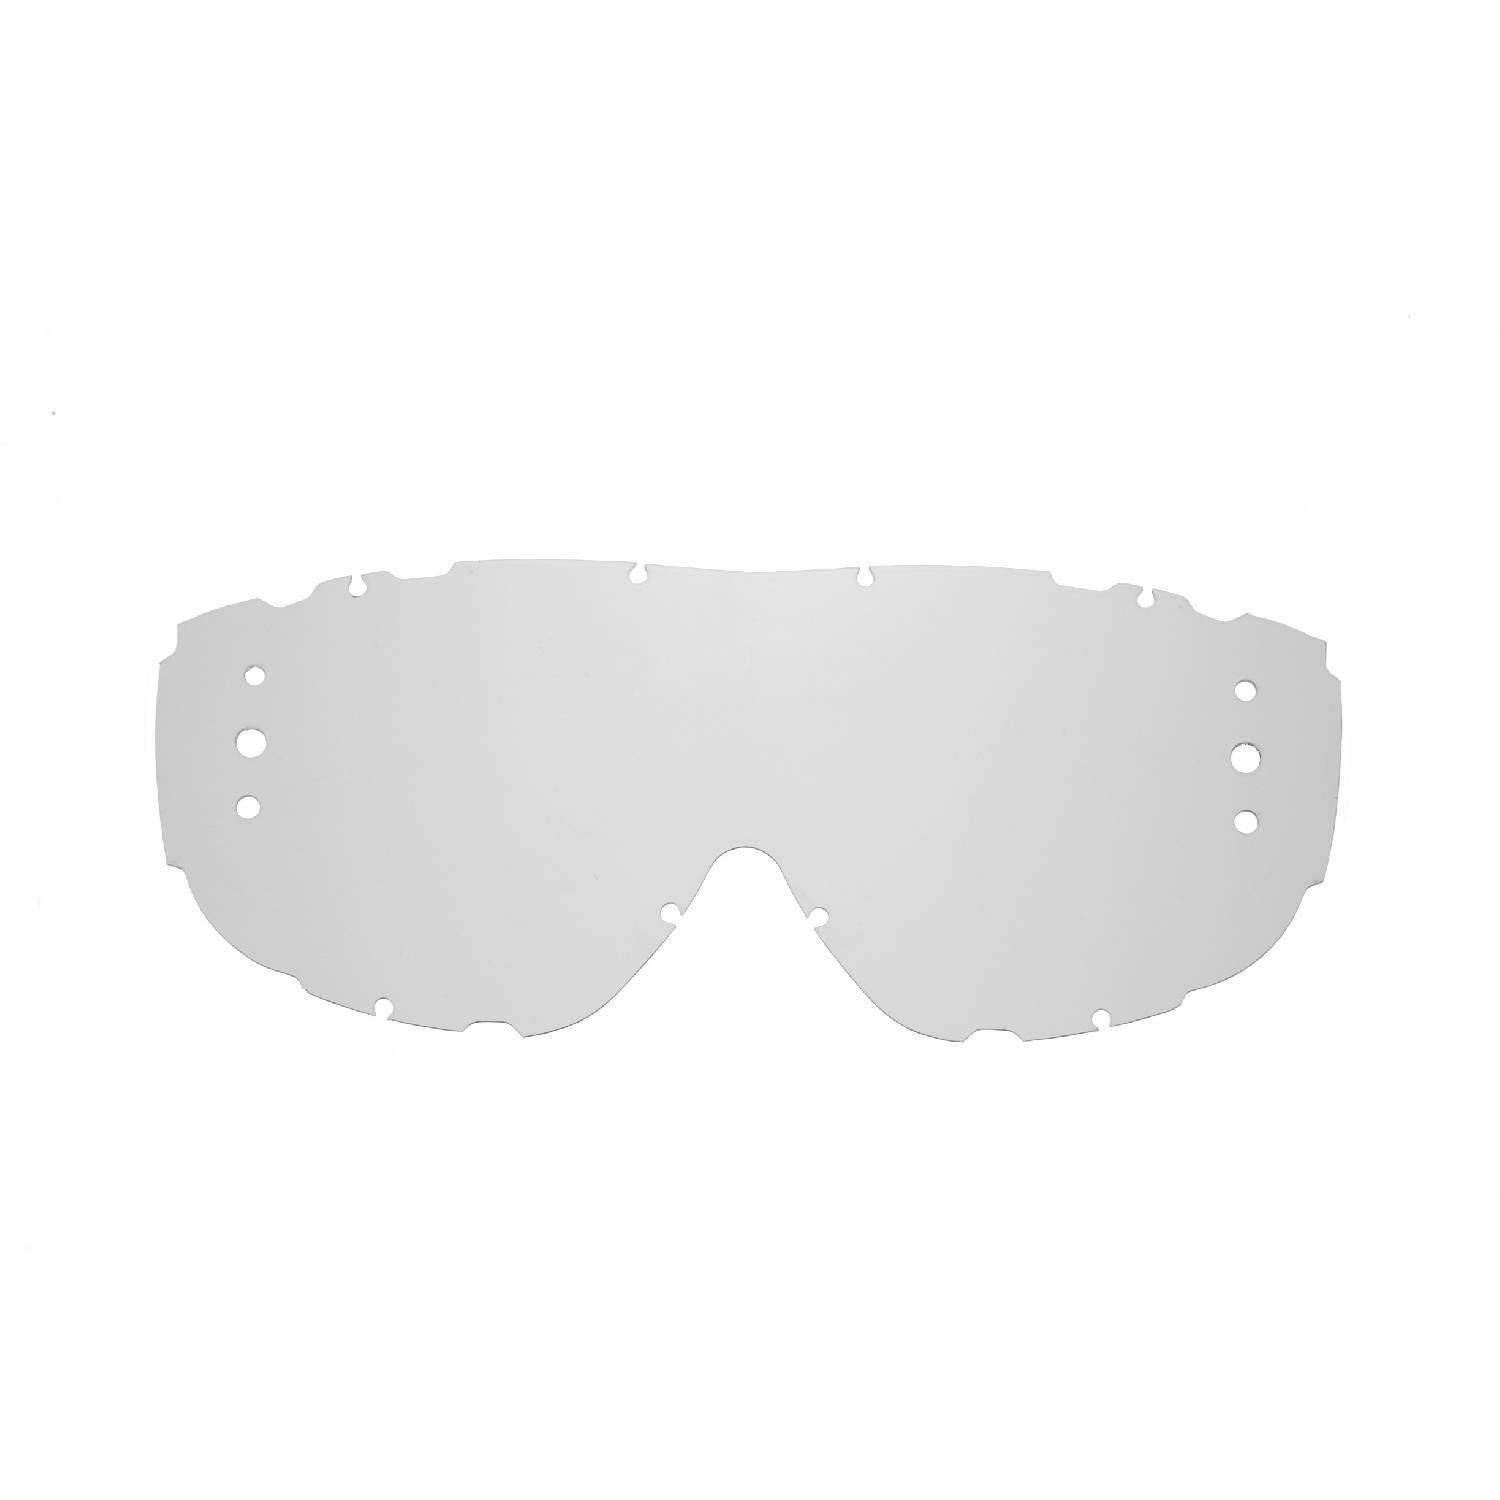 Lente di ricambio roll-off trasparente compatibile per occhiale/maschera Smith Piston